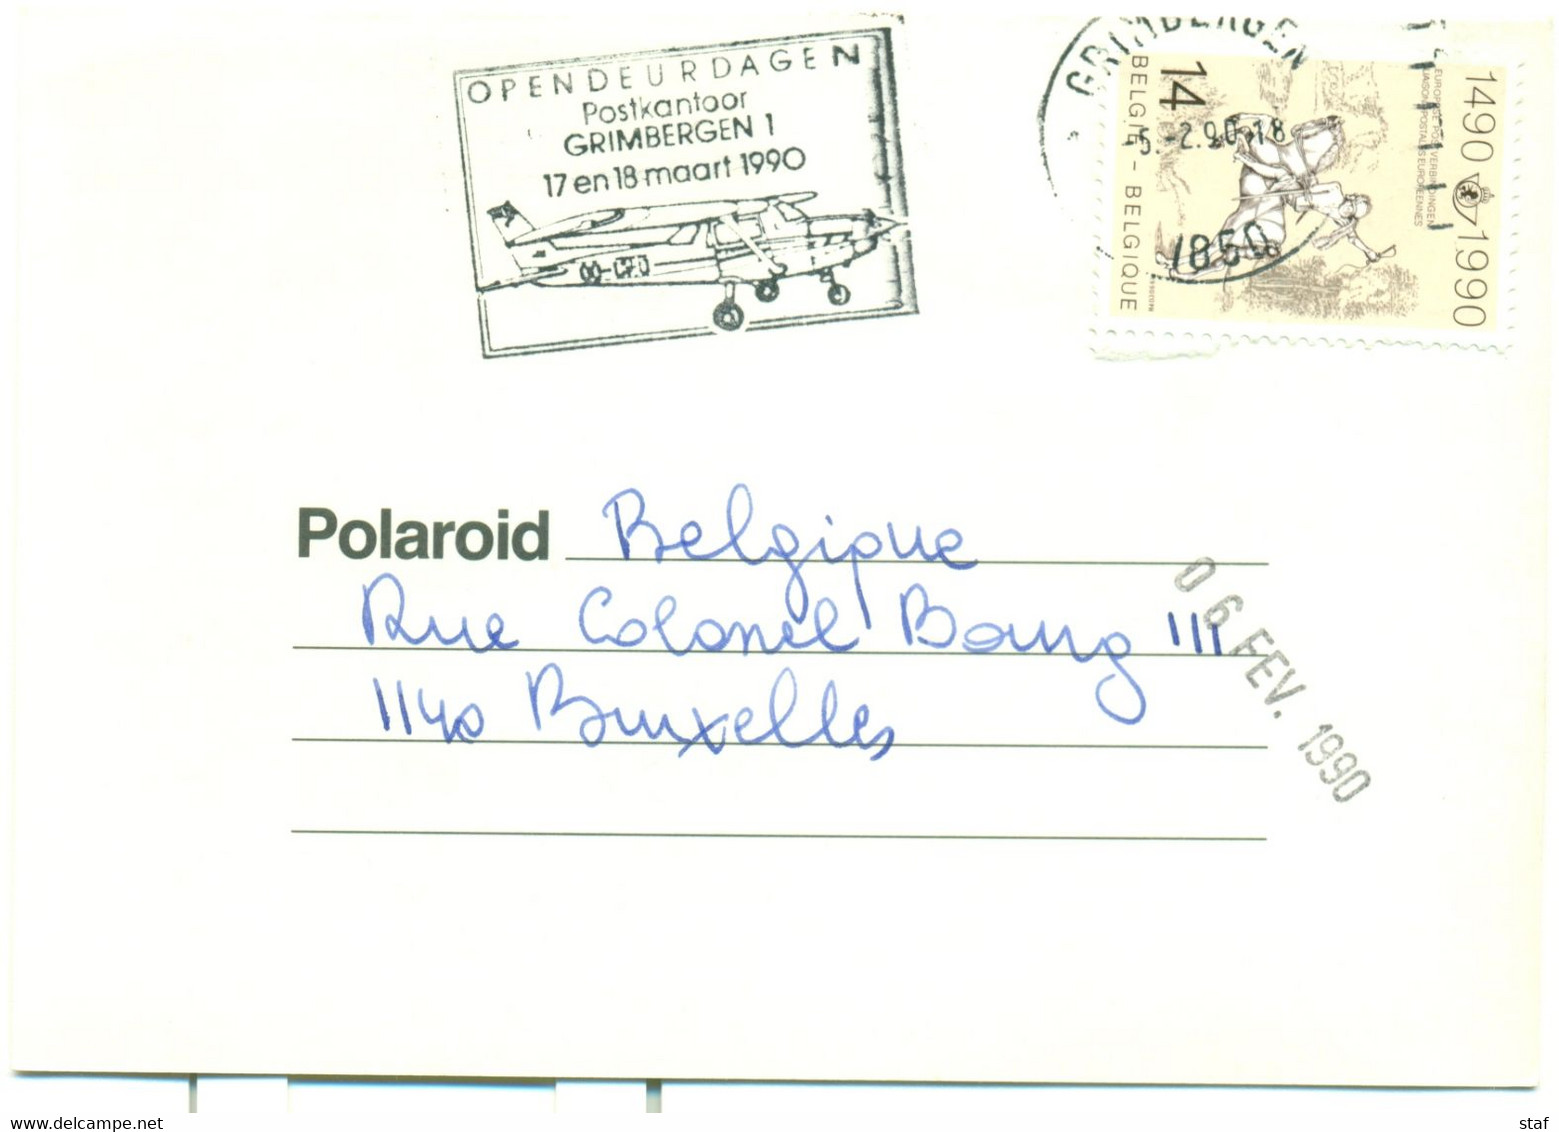 Opendeurdagen Postkantoor Grimbergen 1  17 En 18 Maart 1990 - Vlagstempels